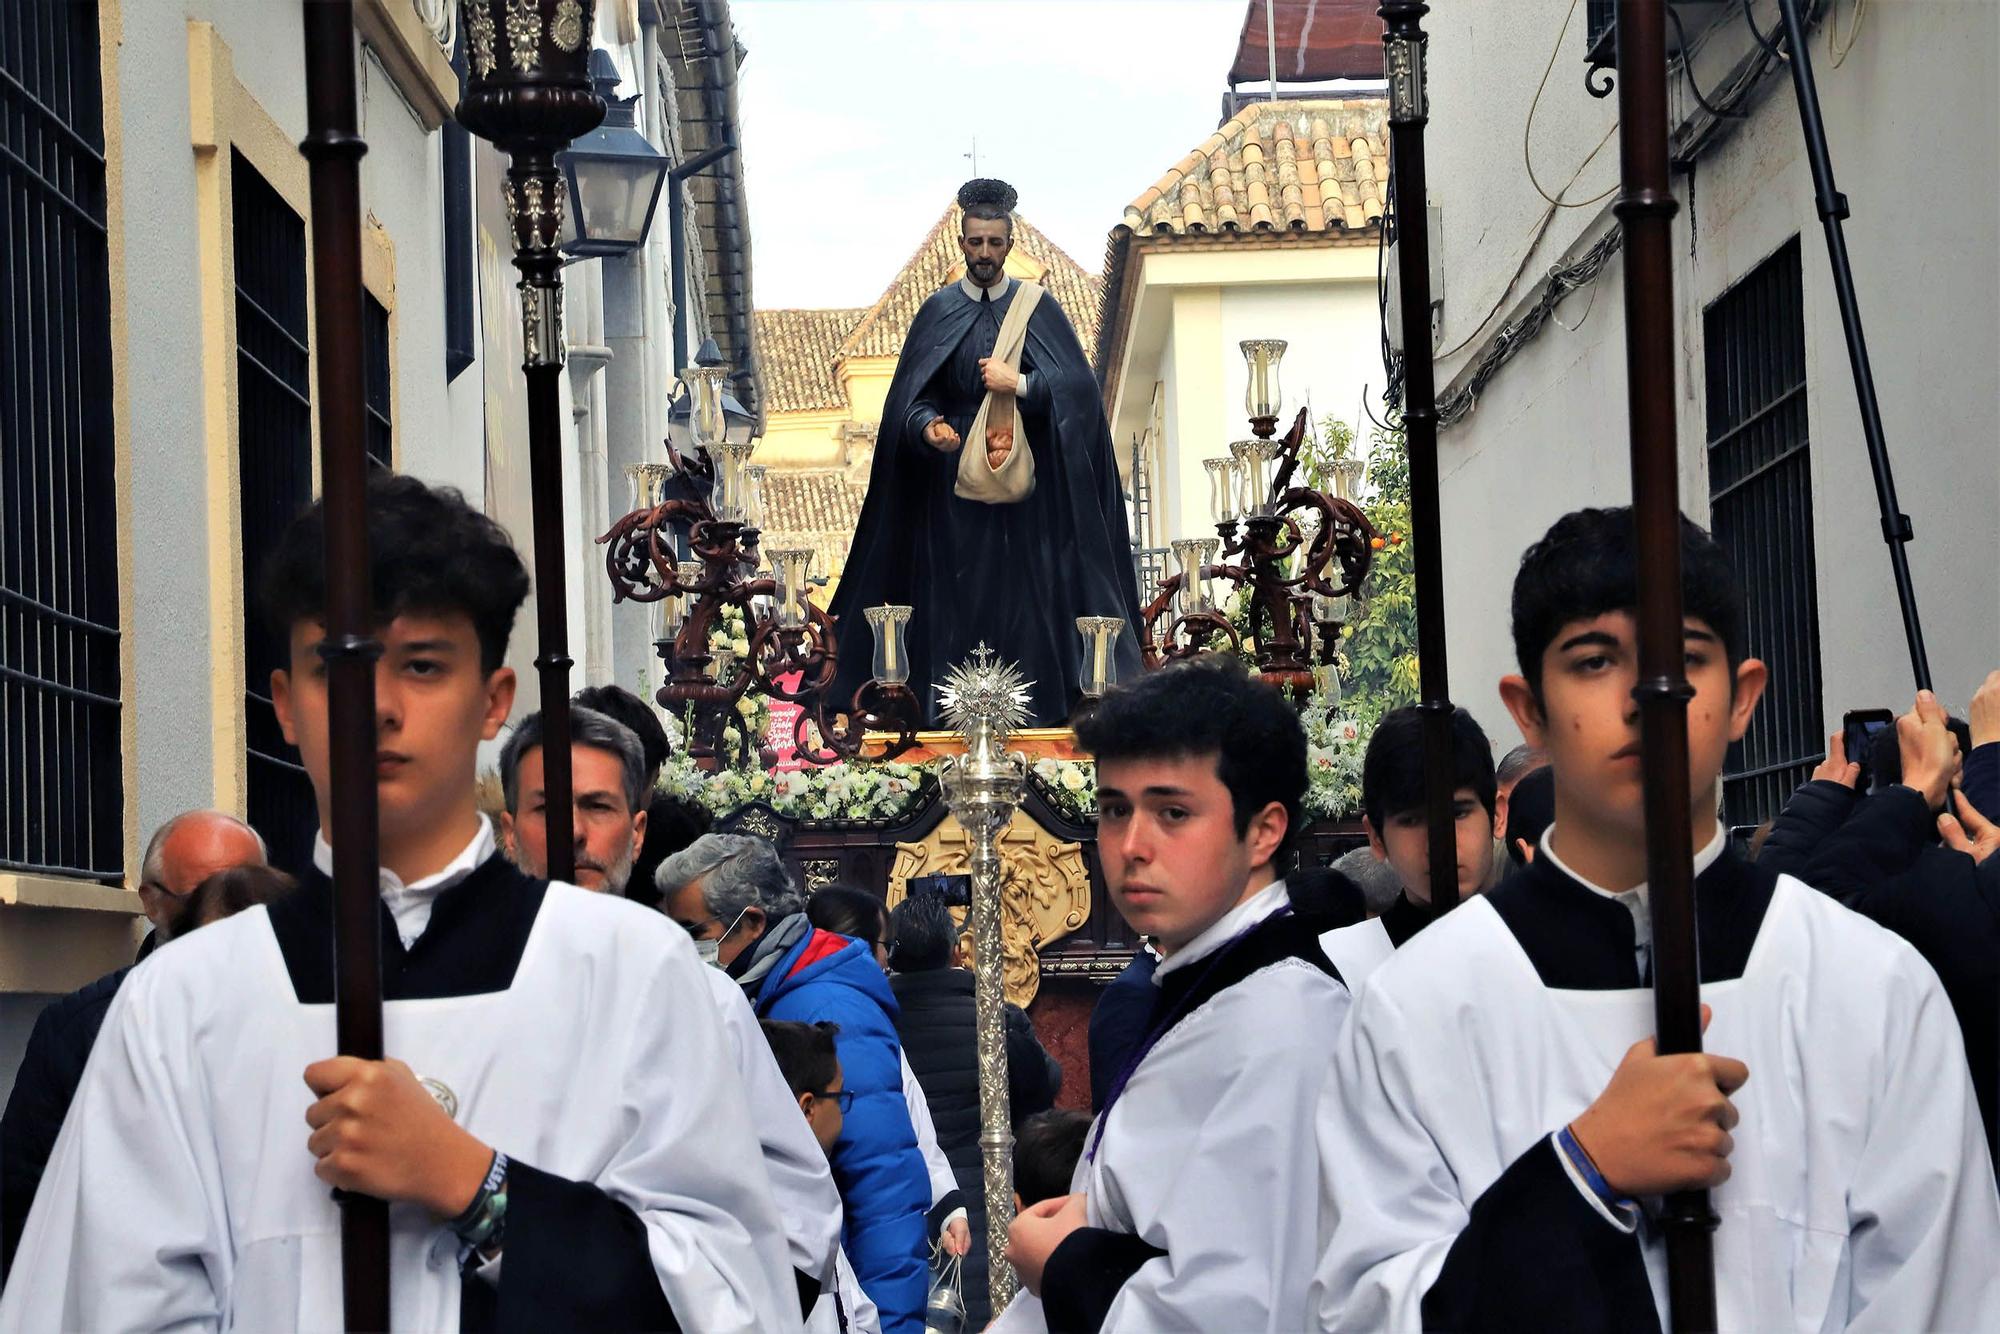 El Padre Cristobal procesiona por las calles del barrio